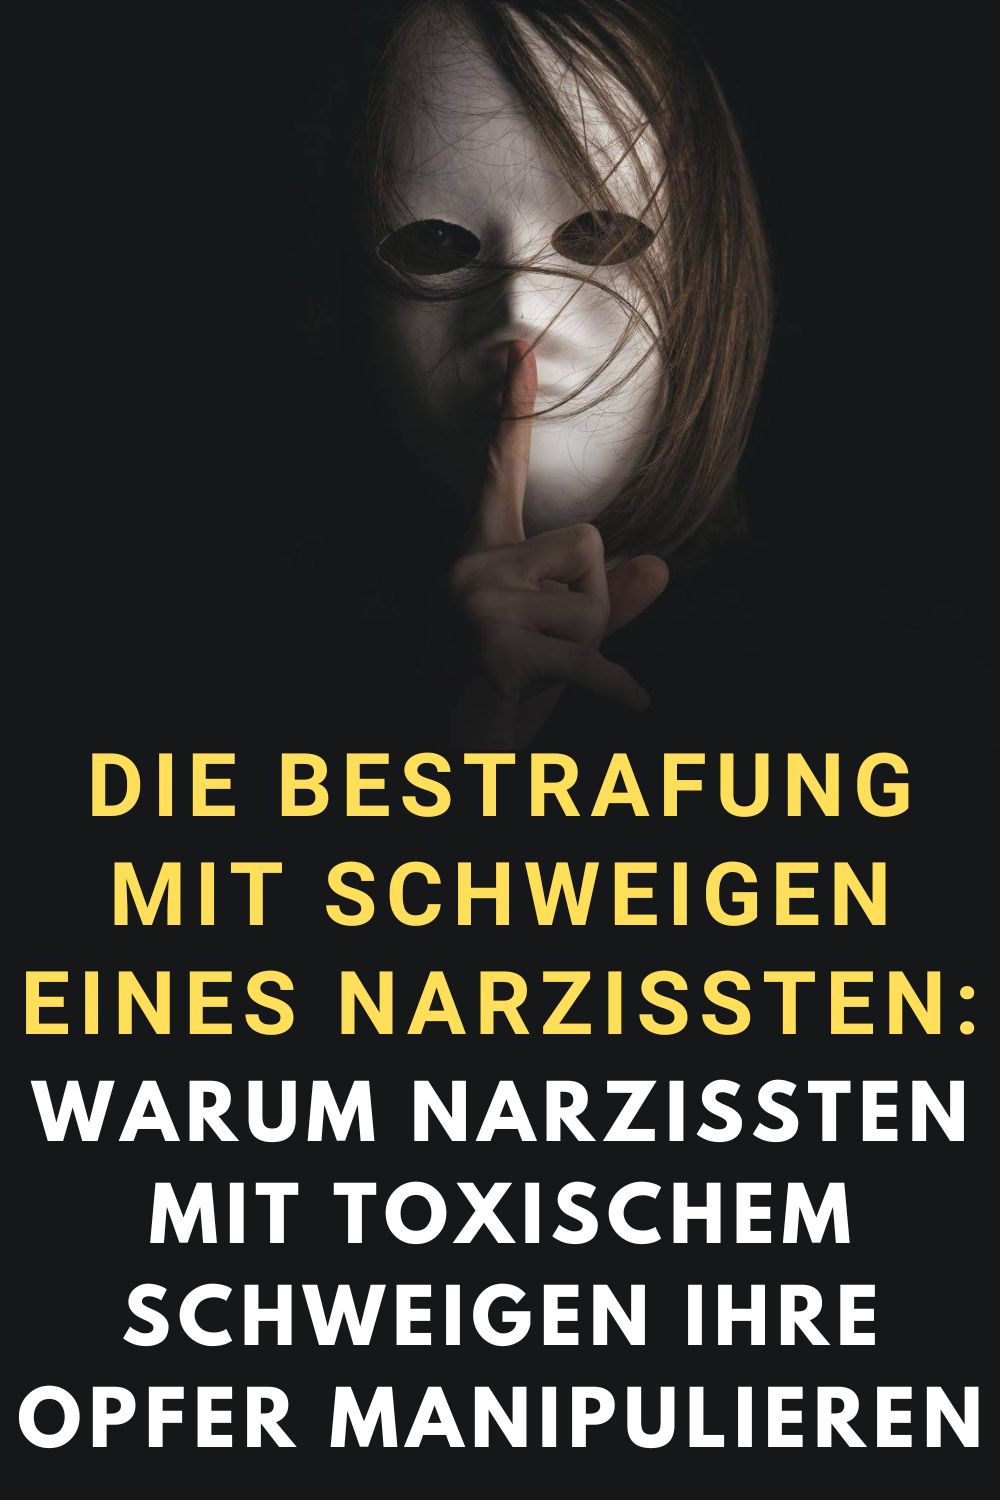 Die-Bestrafung-mit-Schweigen-eines-Narzissten-Warum-Narzissten-mit-toxischem-Schweigen-ihre-Opfer-manipulieren